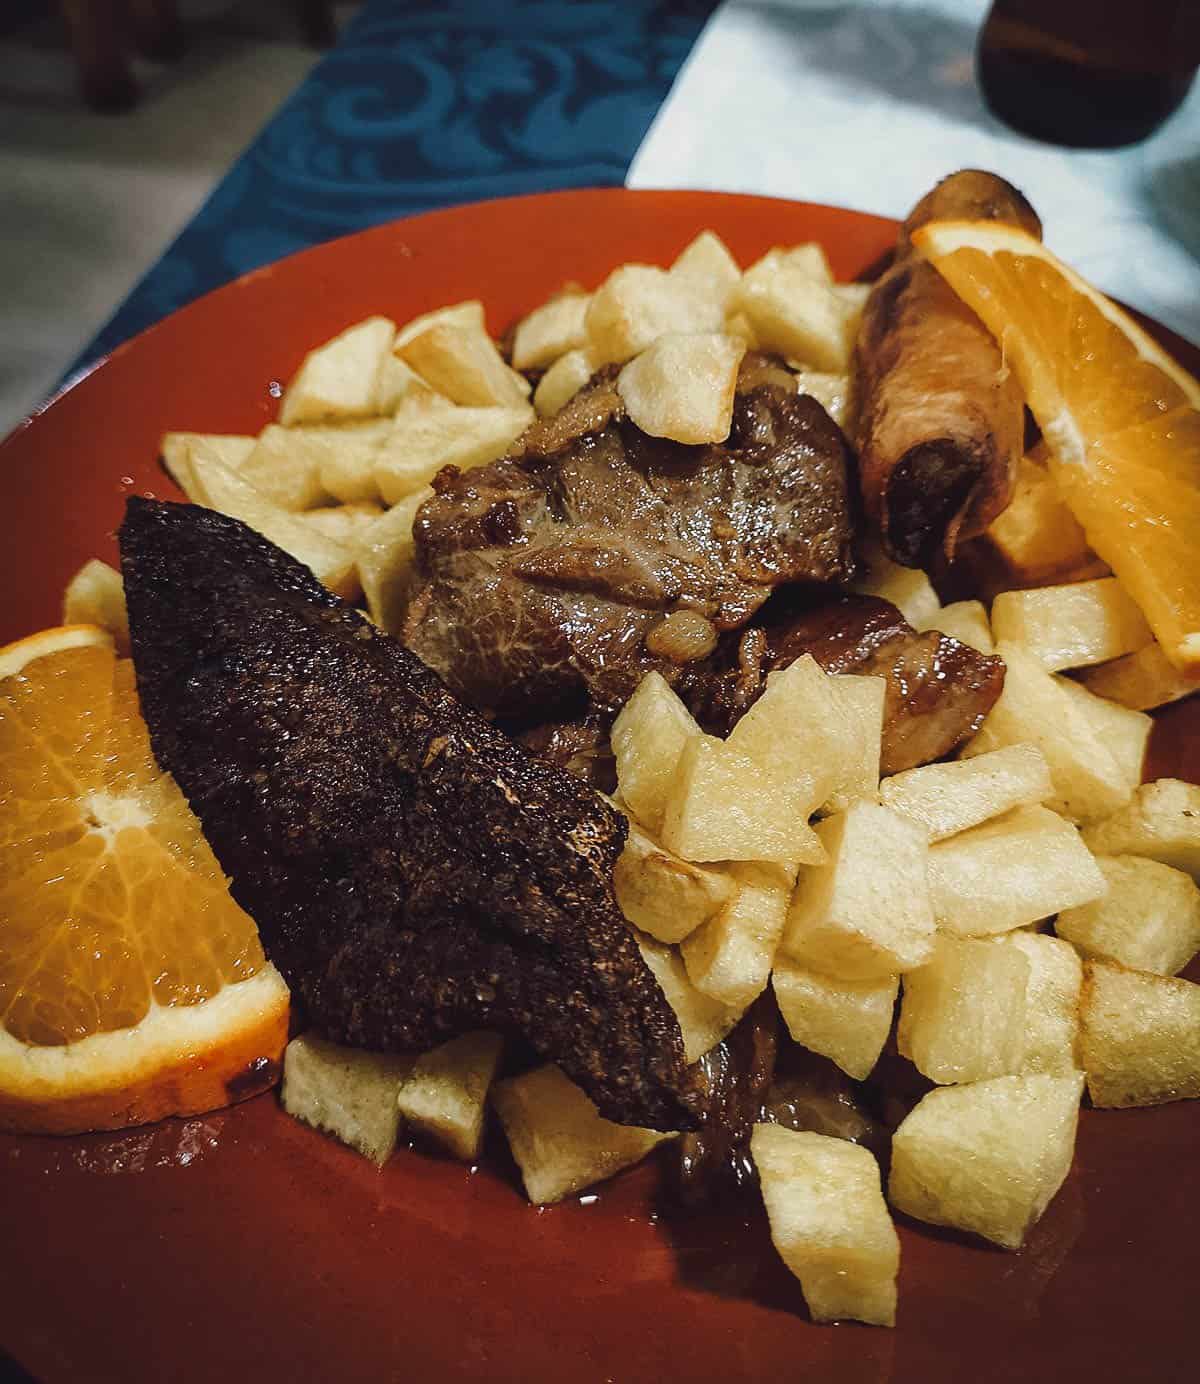 Pork dish at Adega Vila Mea